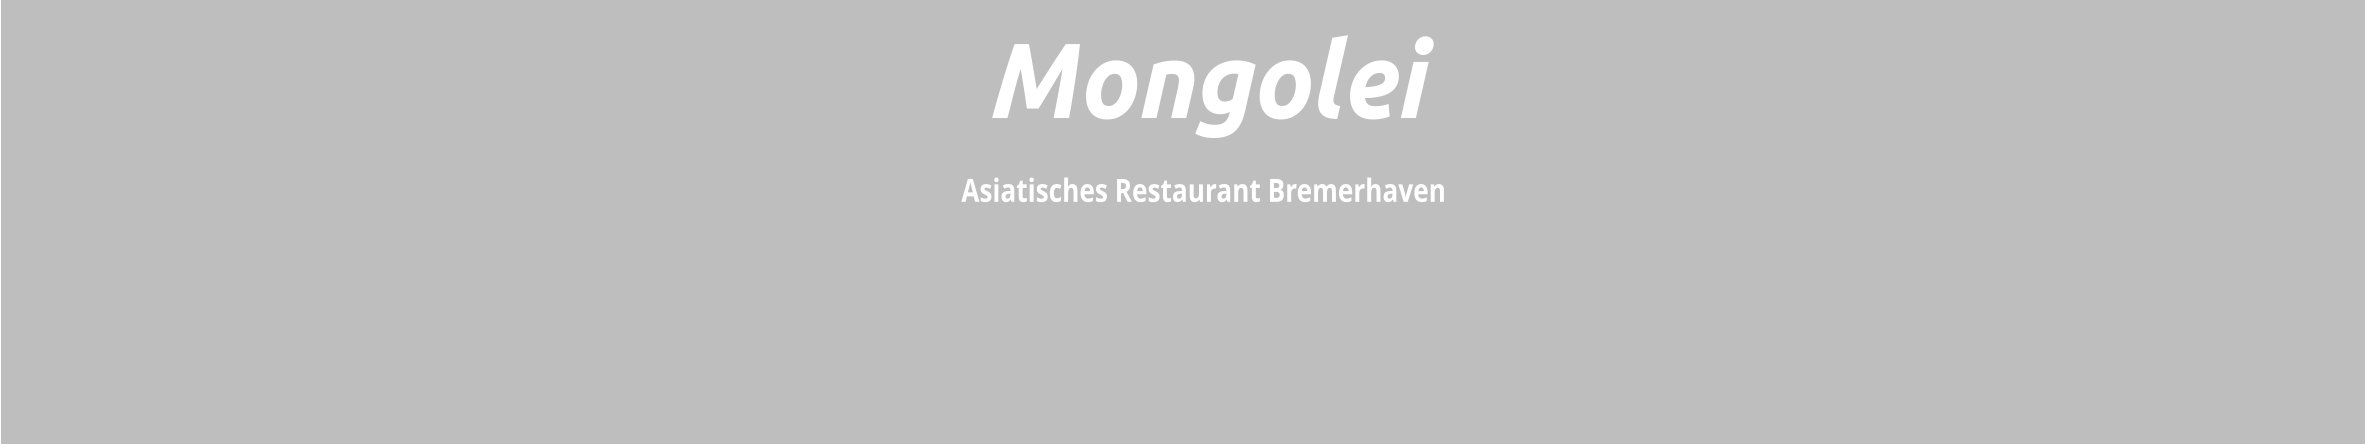 Asiatisches Restaurant Bremerhaven    Mongolei